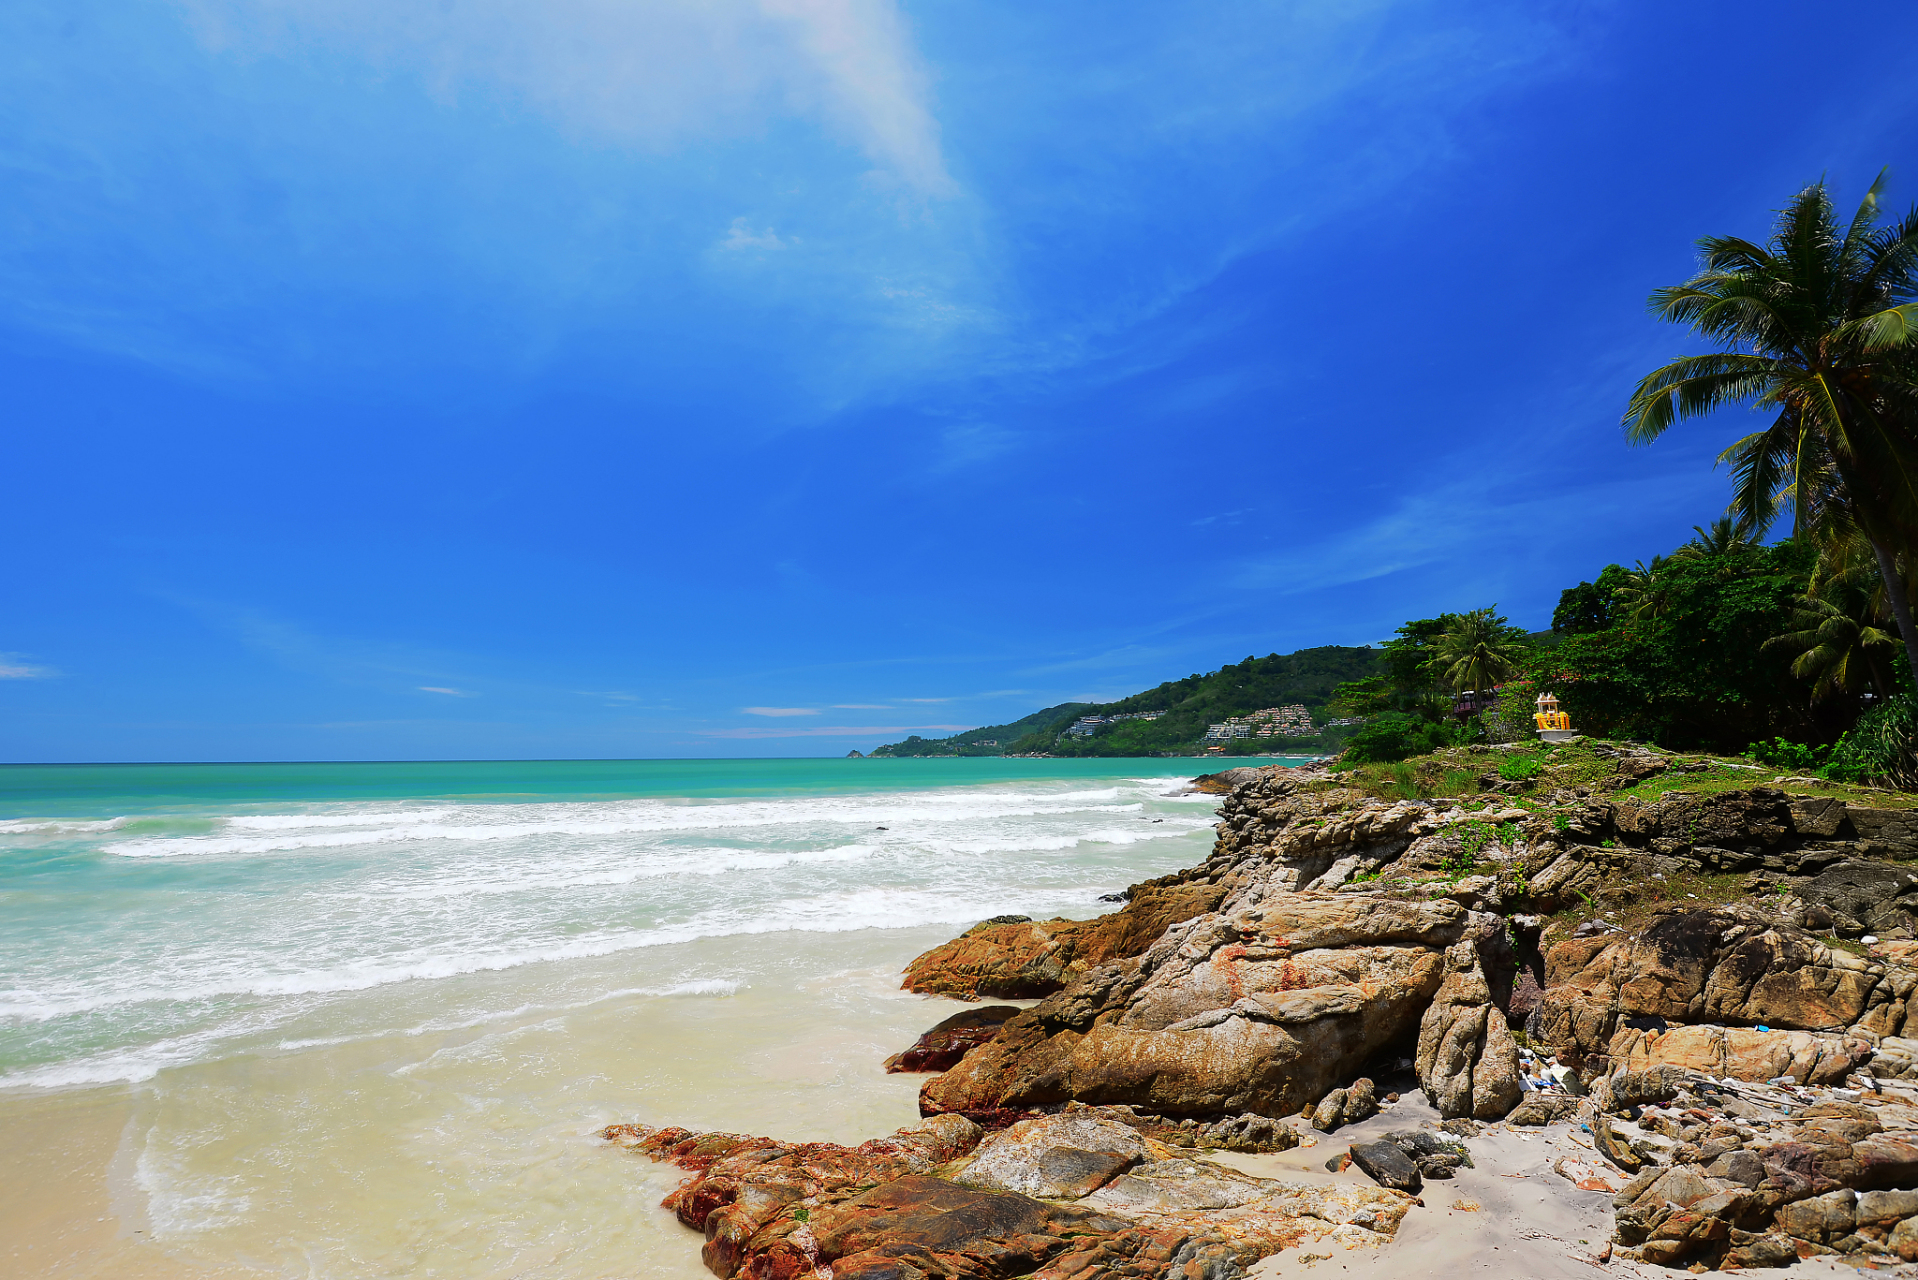 海南石梅湾景区是一个拥有原始风光和丰富旅游资源的度假胜地